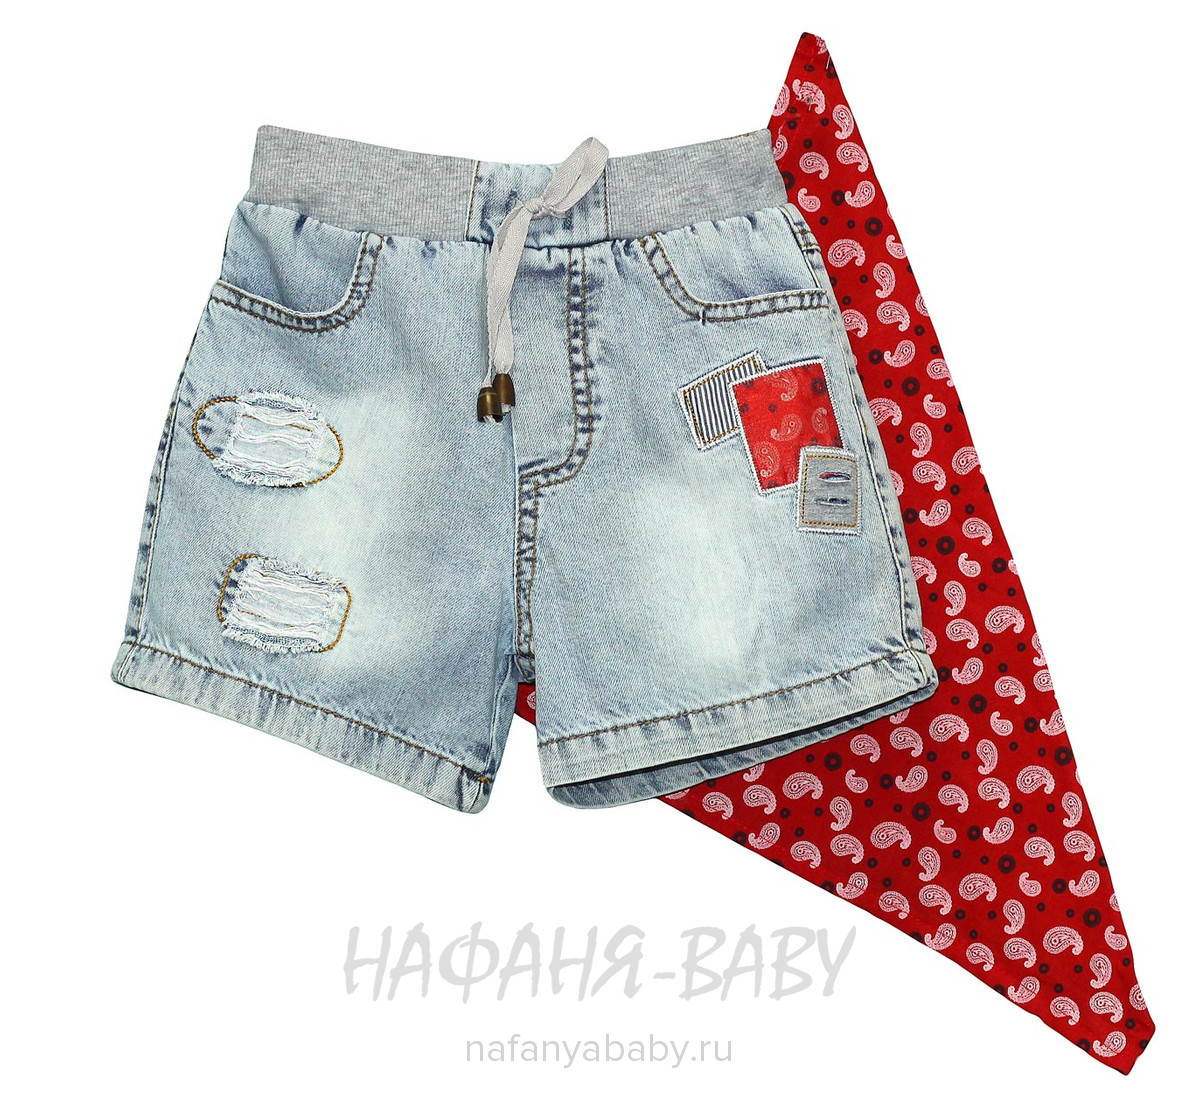 Детские джинсовые шорты + косынка OVERDO, купить в интернет магазине Нафаня. арт: 4916.